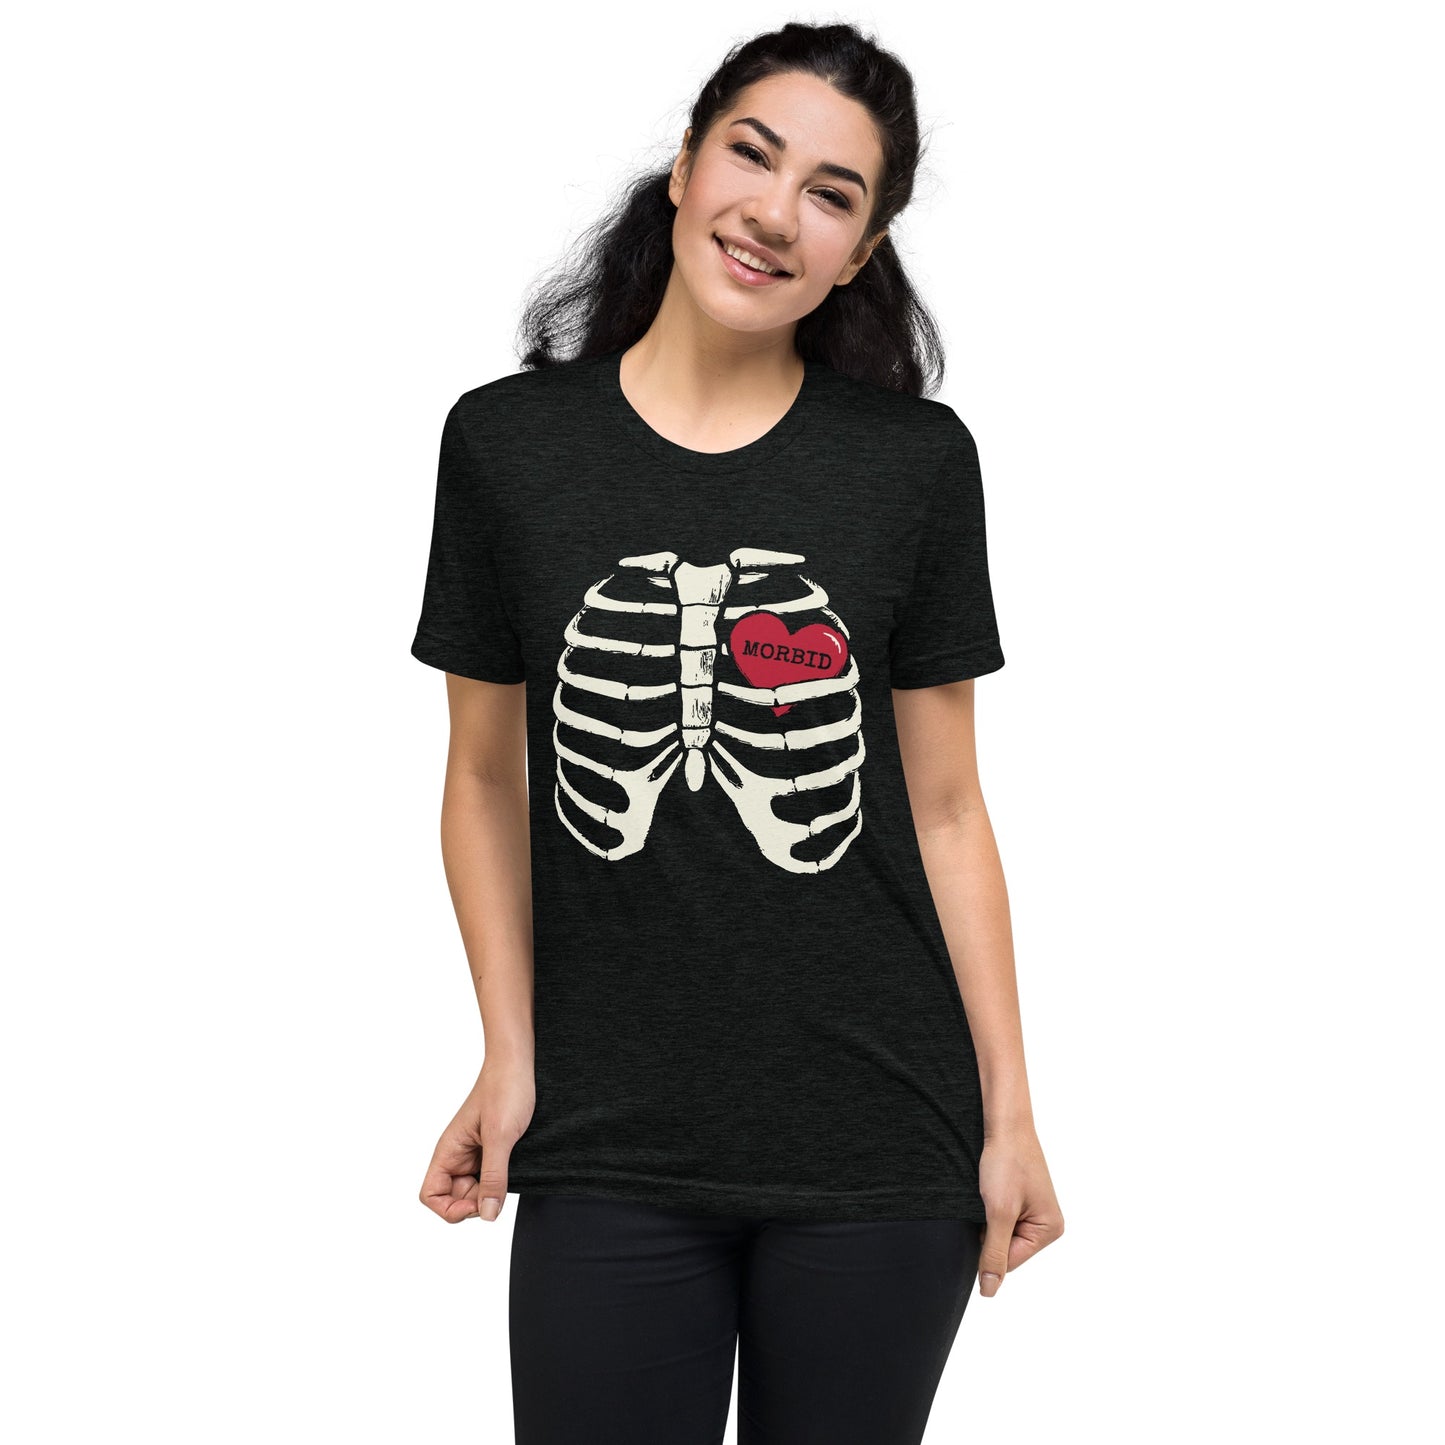 Morbid Heart Adult Short Sleeve T-Shirt